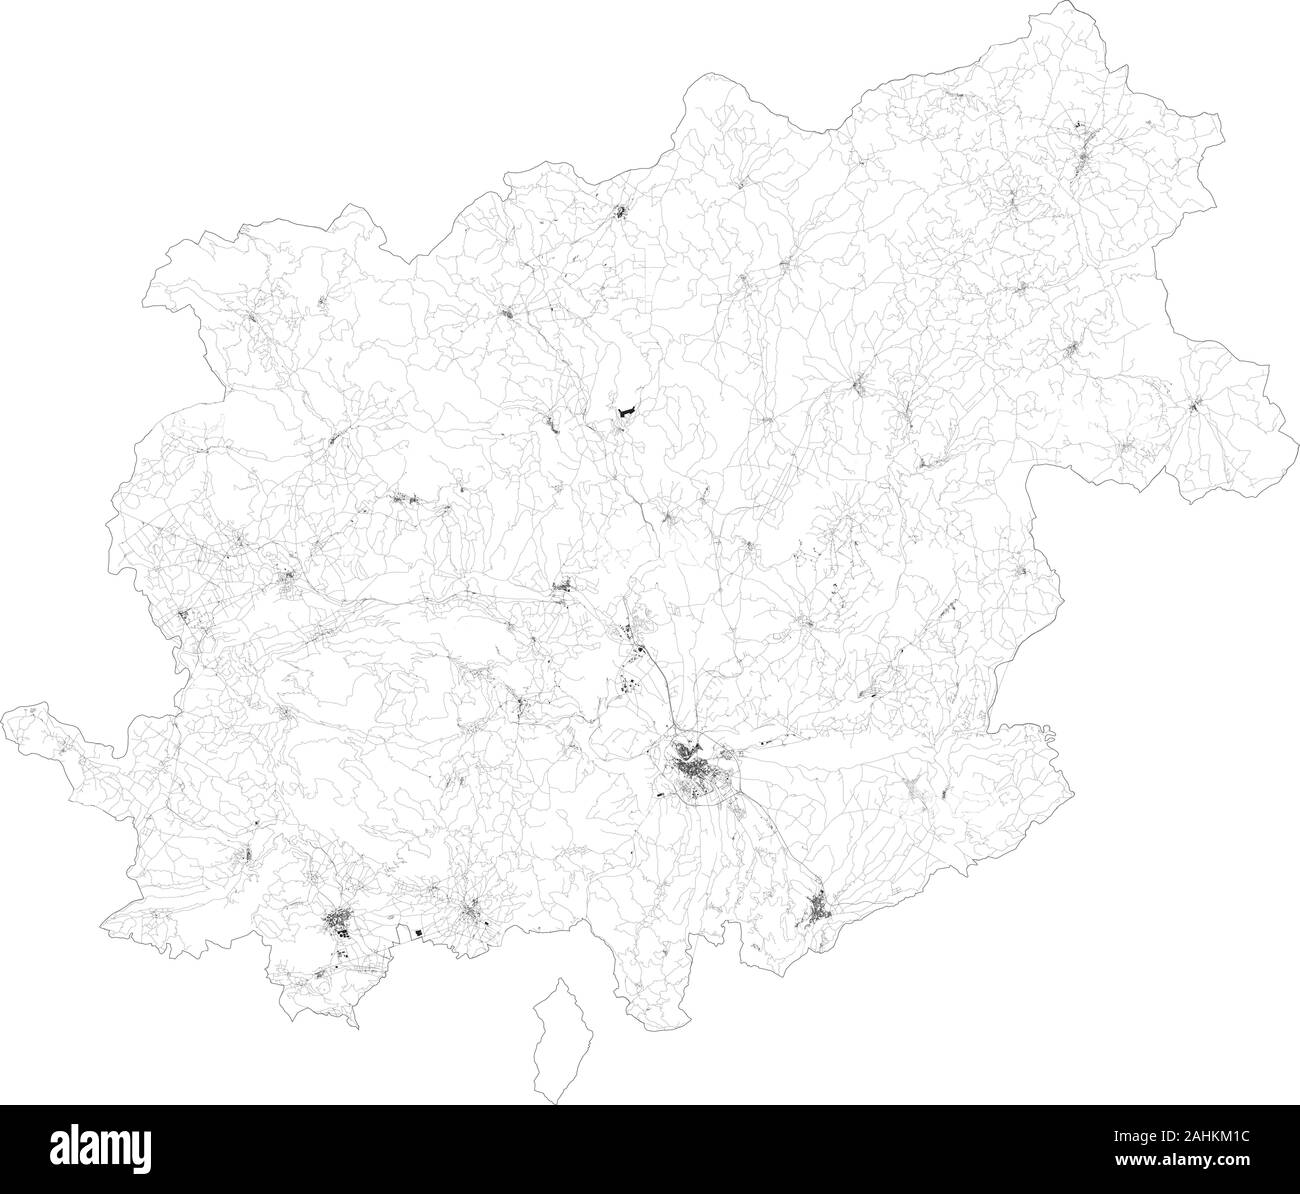 Mappa satellitare della provincia di Benevento città e strade, edifici e strade di collegamento delle aree circostanti. Regione Campania, Italia. Mappa stradale Illustrazione Vettoriale